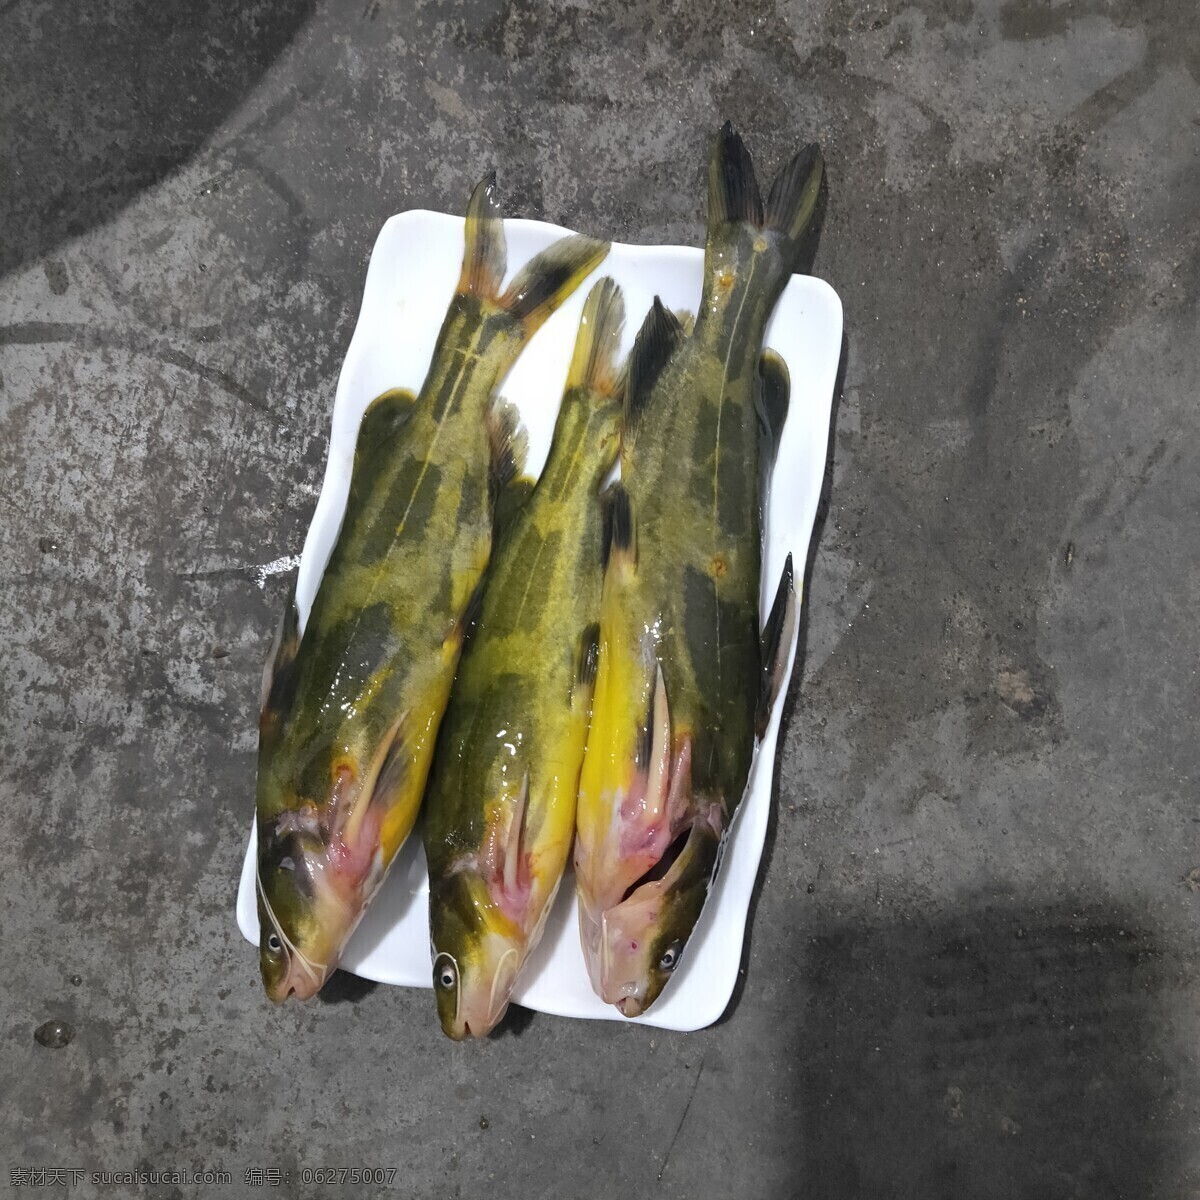 鄱阳湖水产品 黄丫头鱼 黄骨鱼 拍摄 淡水鱼 摄影图 餐饮美食 食物原料